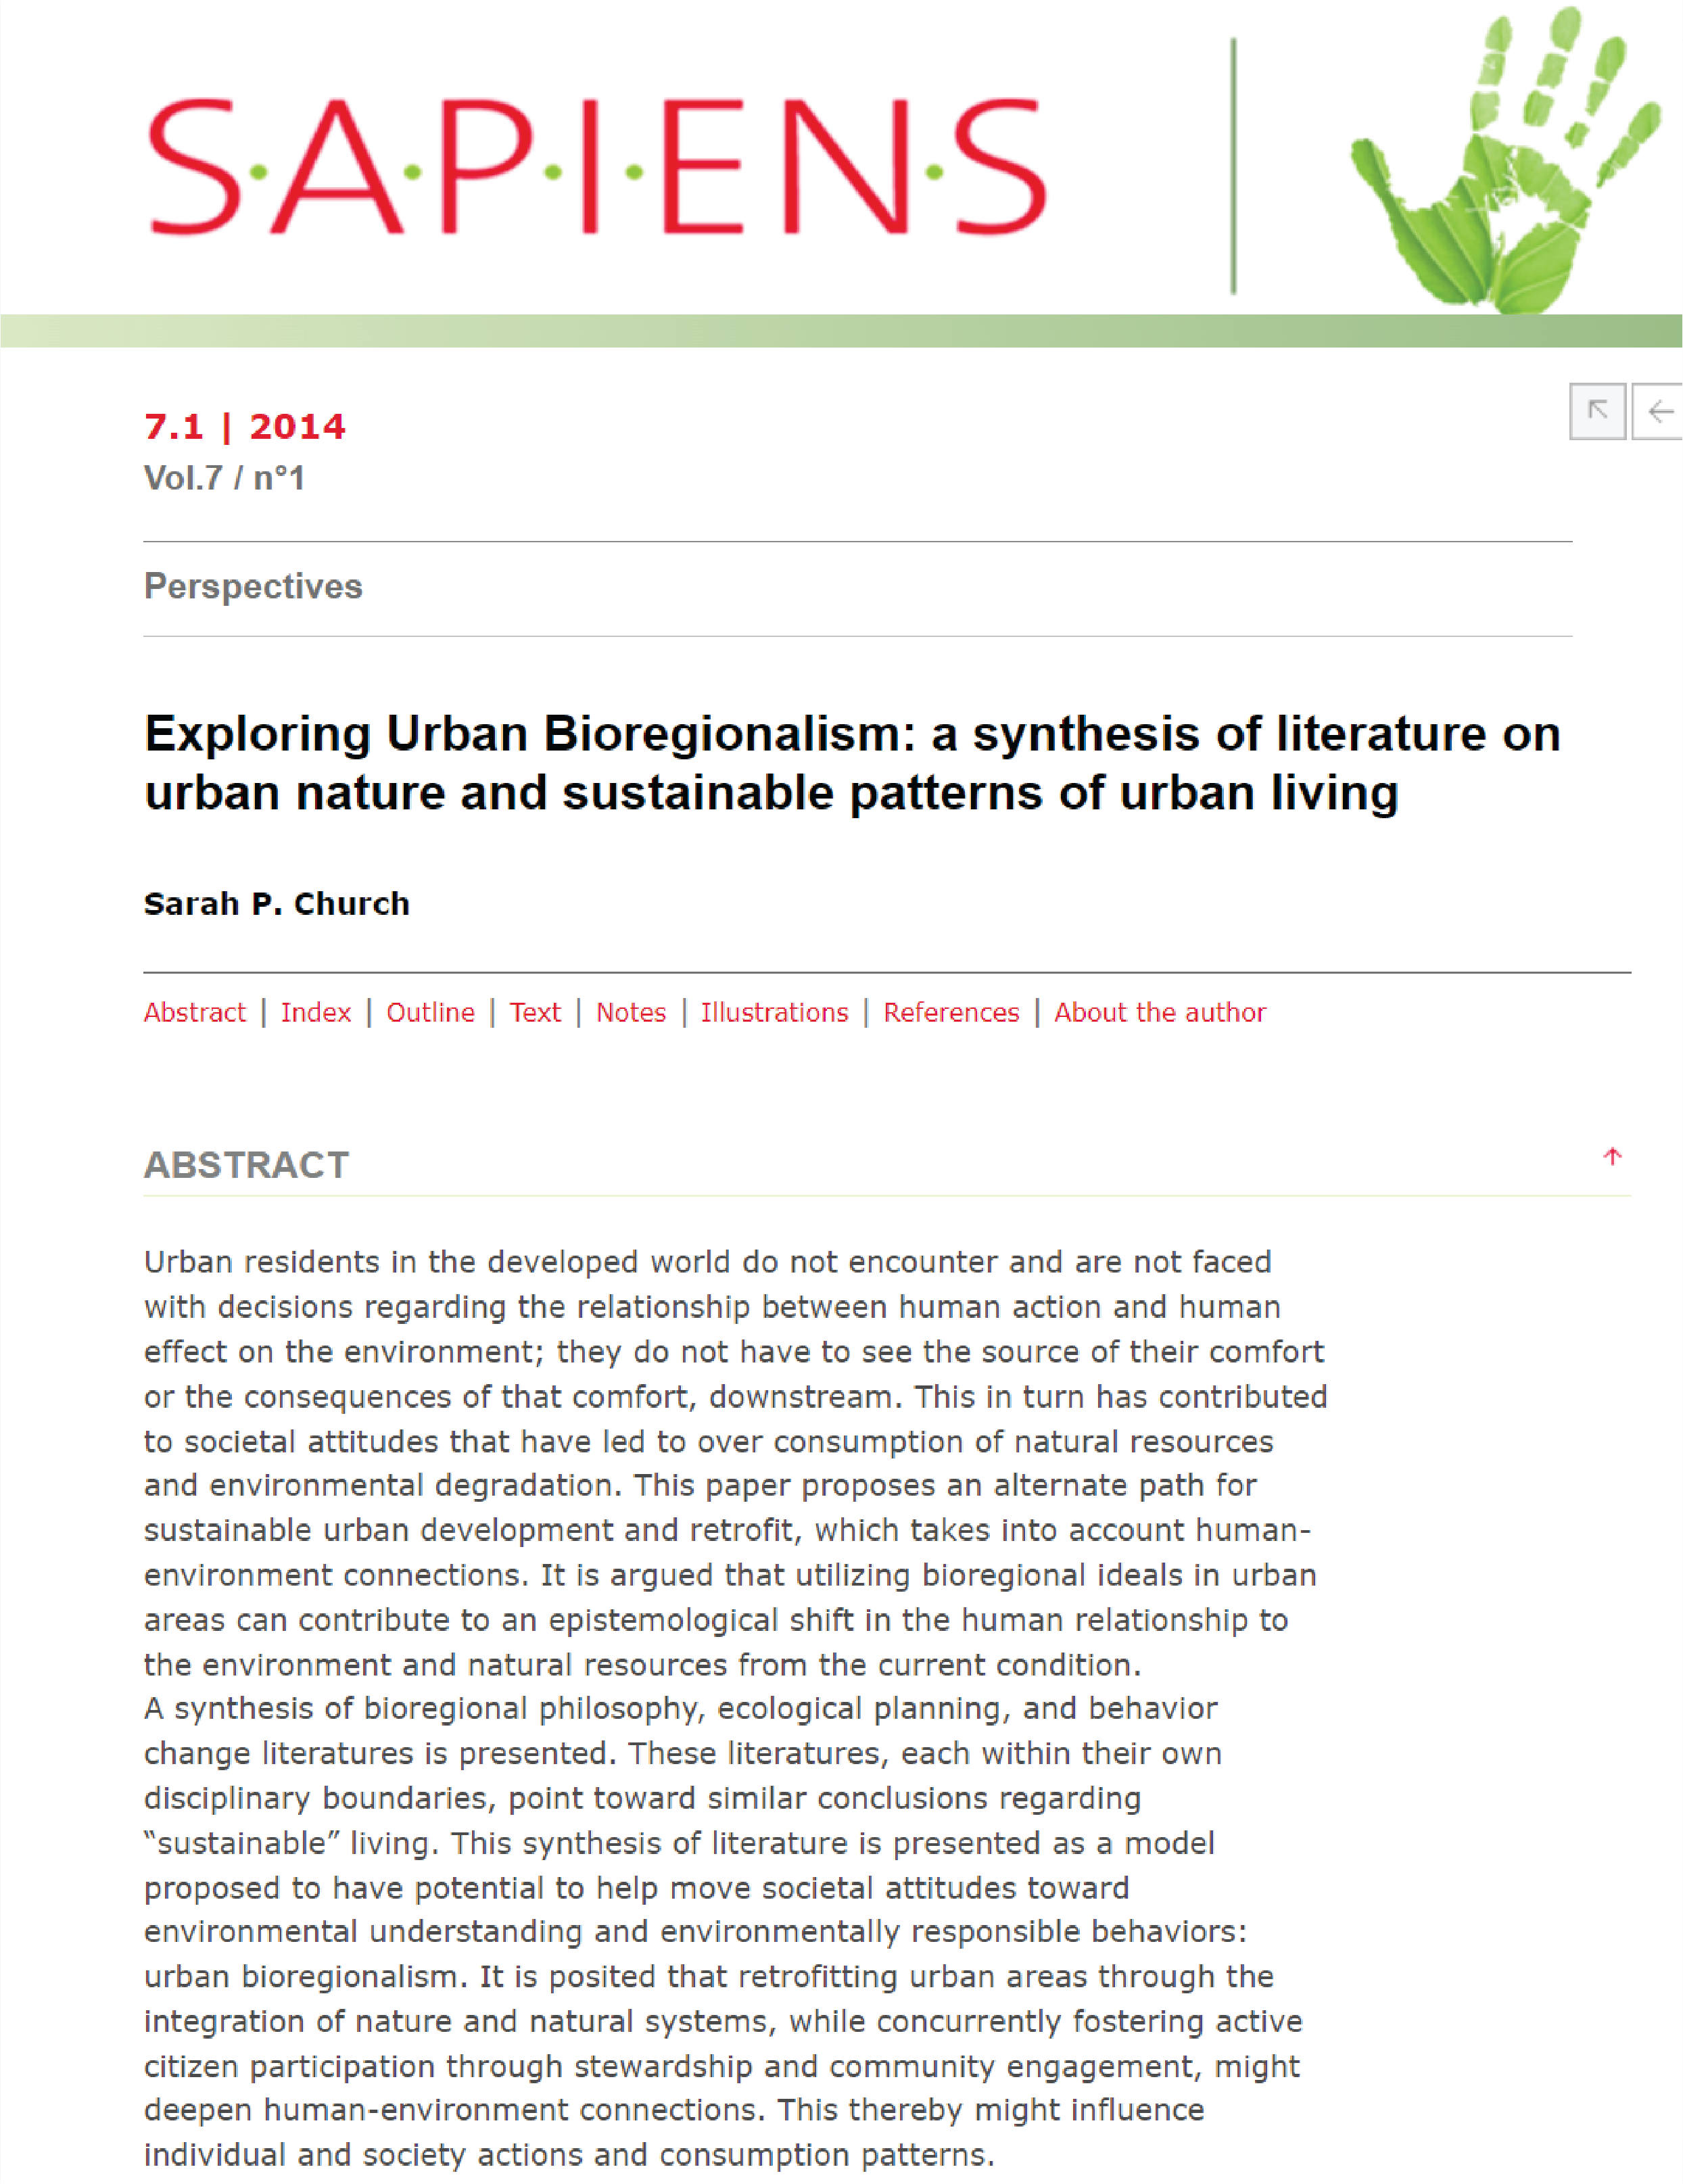 Exploring Urban Bioregionalism